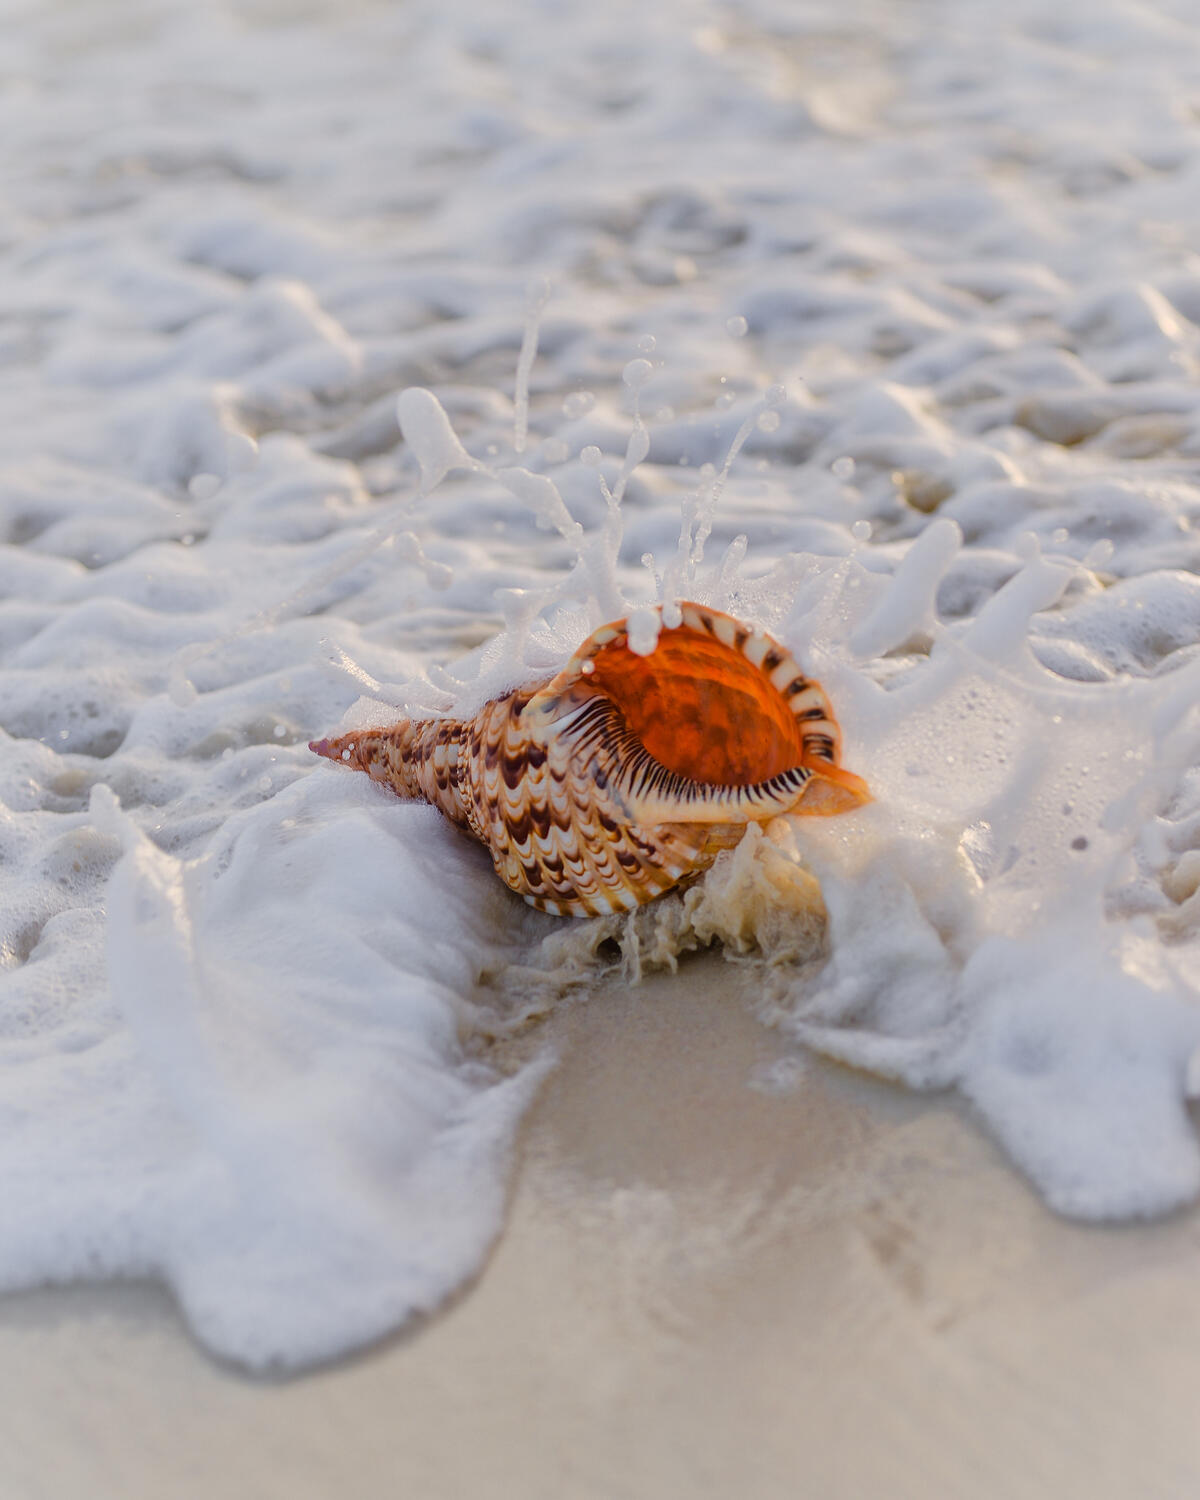 A seashell on the shore